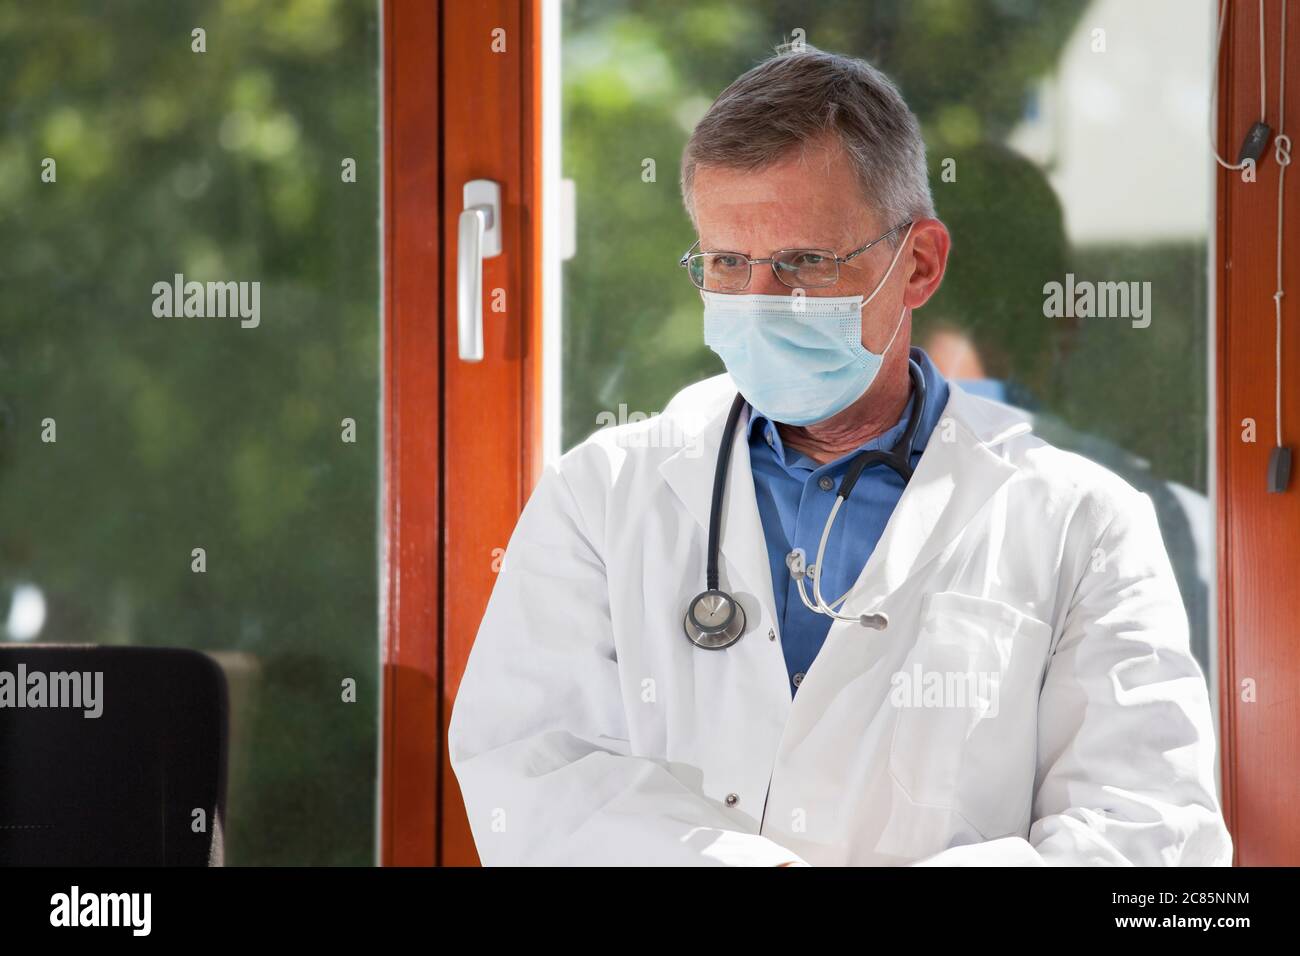 Porträt eines müden oder erschöpften Arztes, der in einem hellen Wartezimmer eines Krankenhauses oder einer Klinik sitzt - Fokus auf das Gesicht Stockfoto